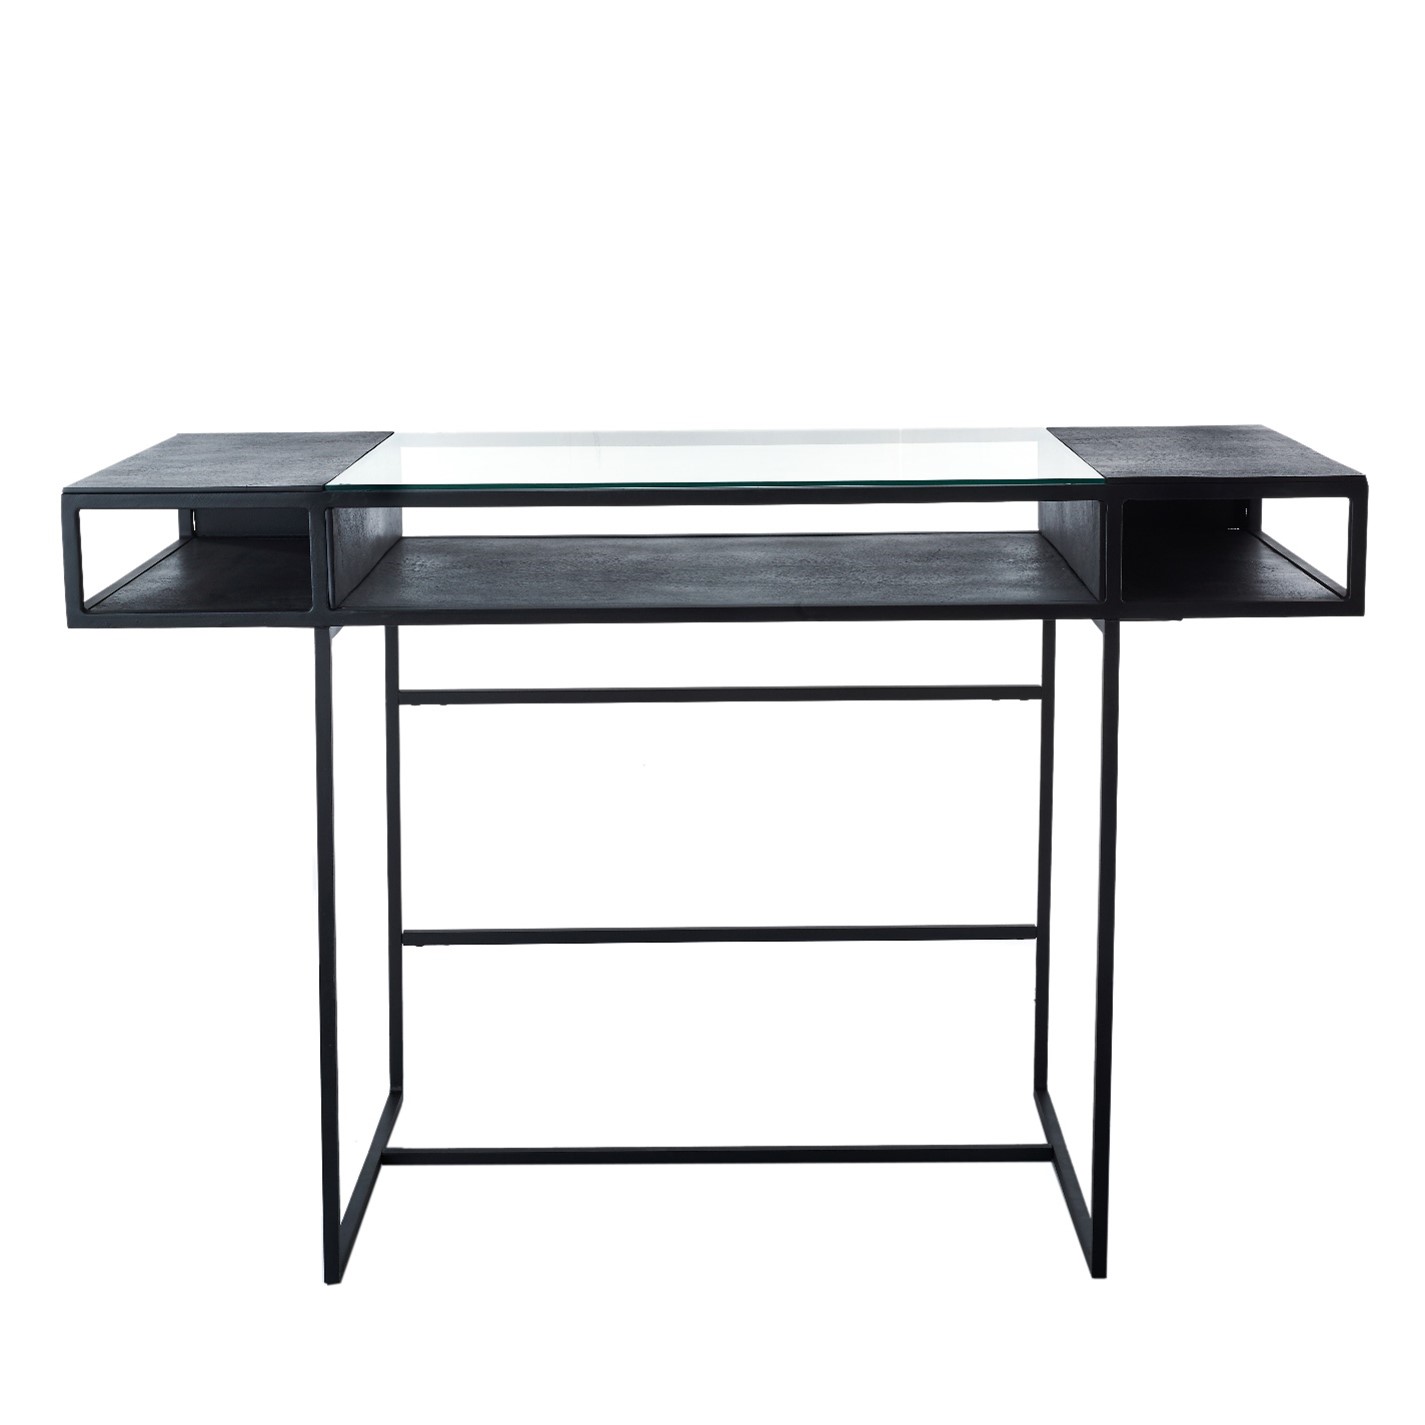 Desk in iron, glass and aluminium - Dimensions: L 119 x W 59 x H 75,5 cm- Price : 899,00€